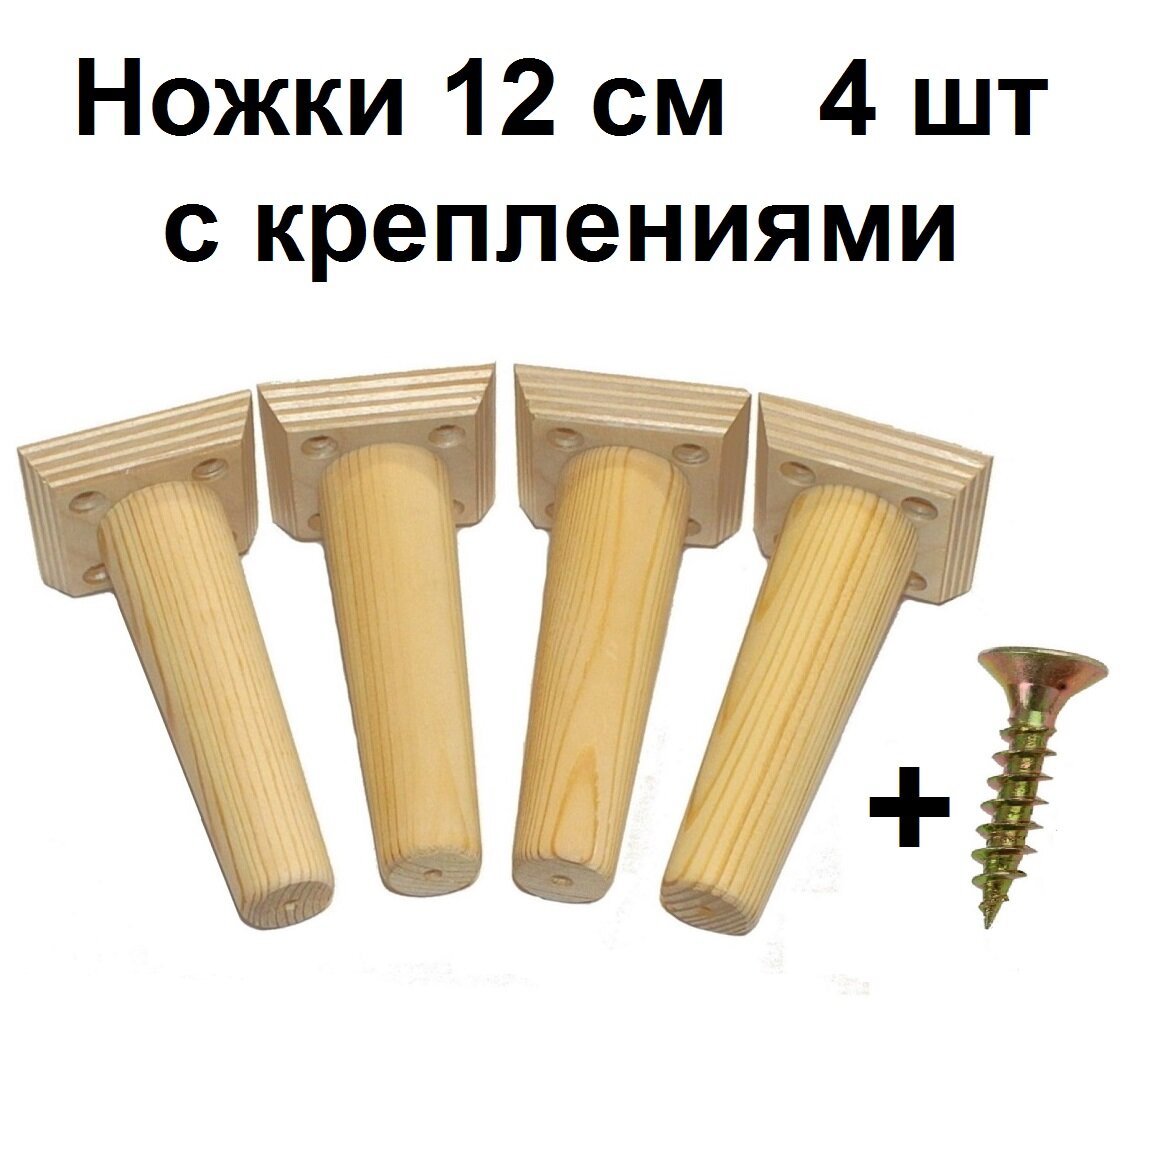 Ножки мебельные деревянные с креплением, 12 см 4 шт для шкафа комода стеллажа